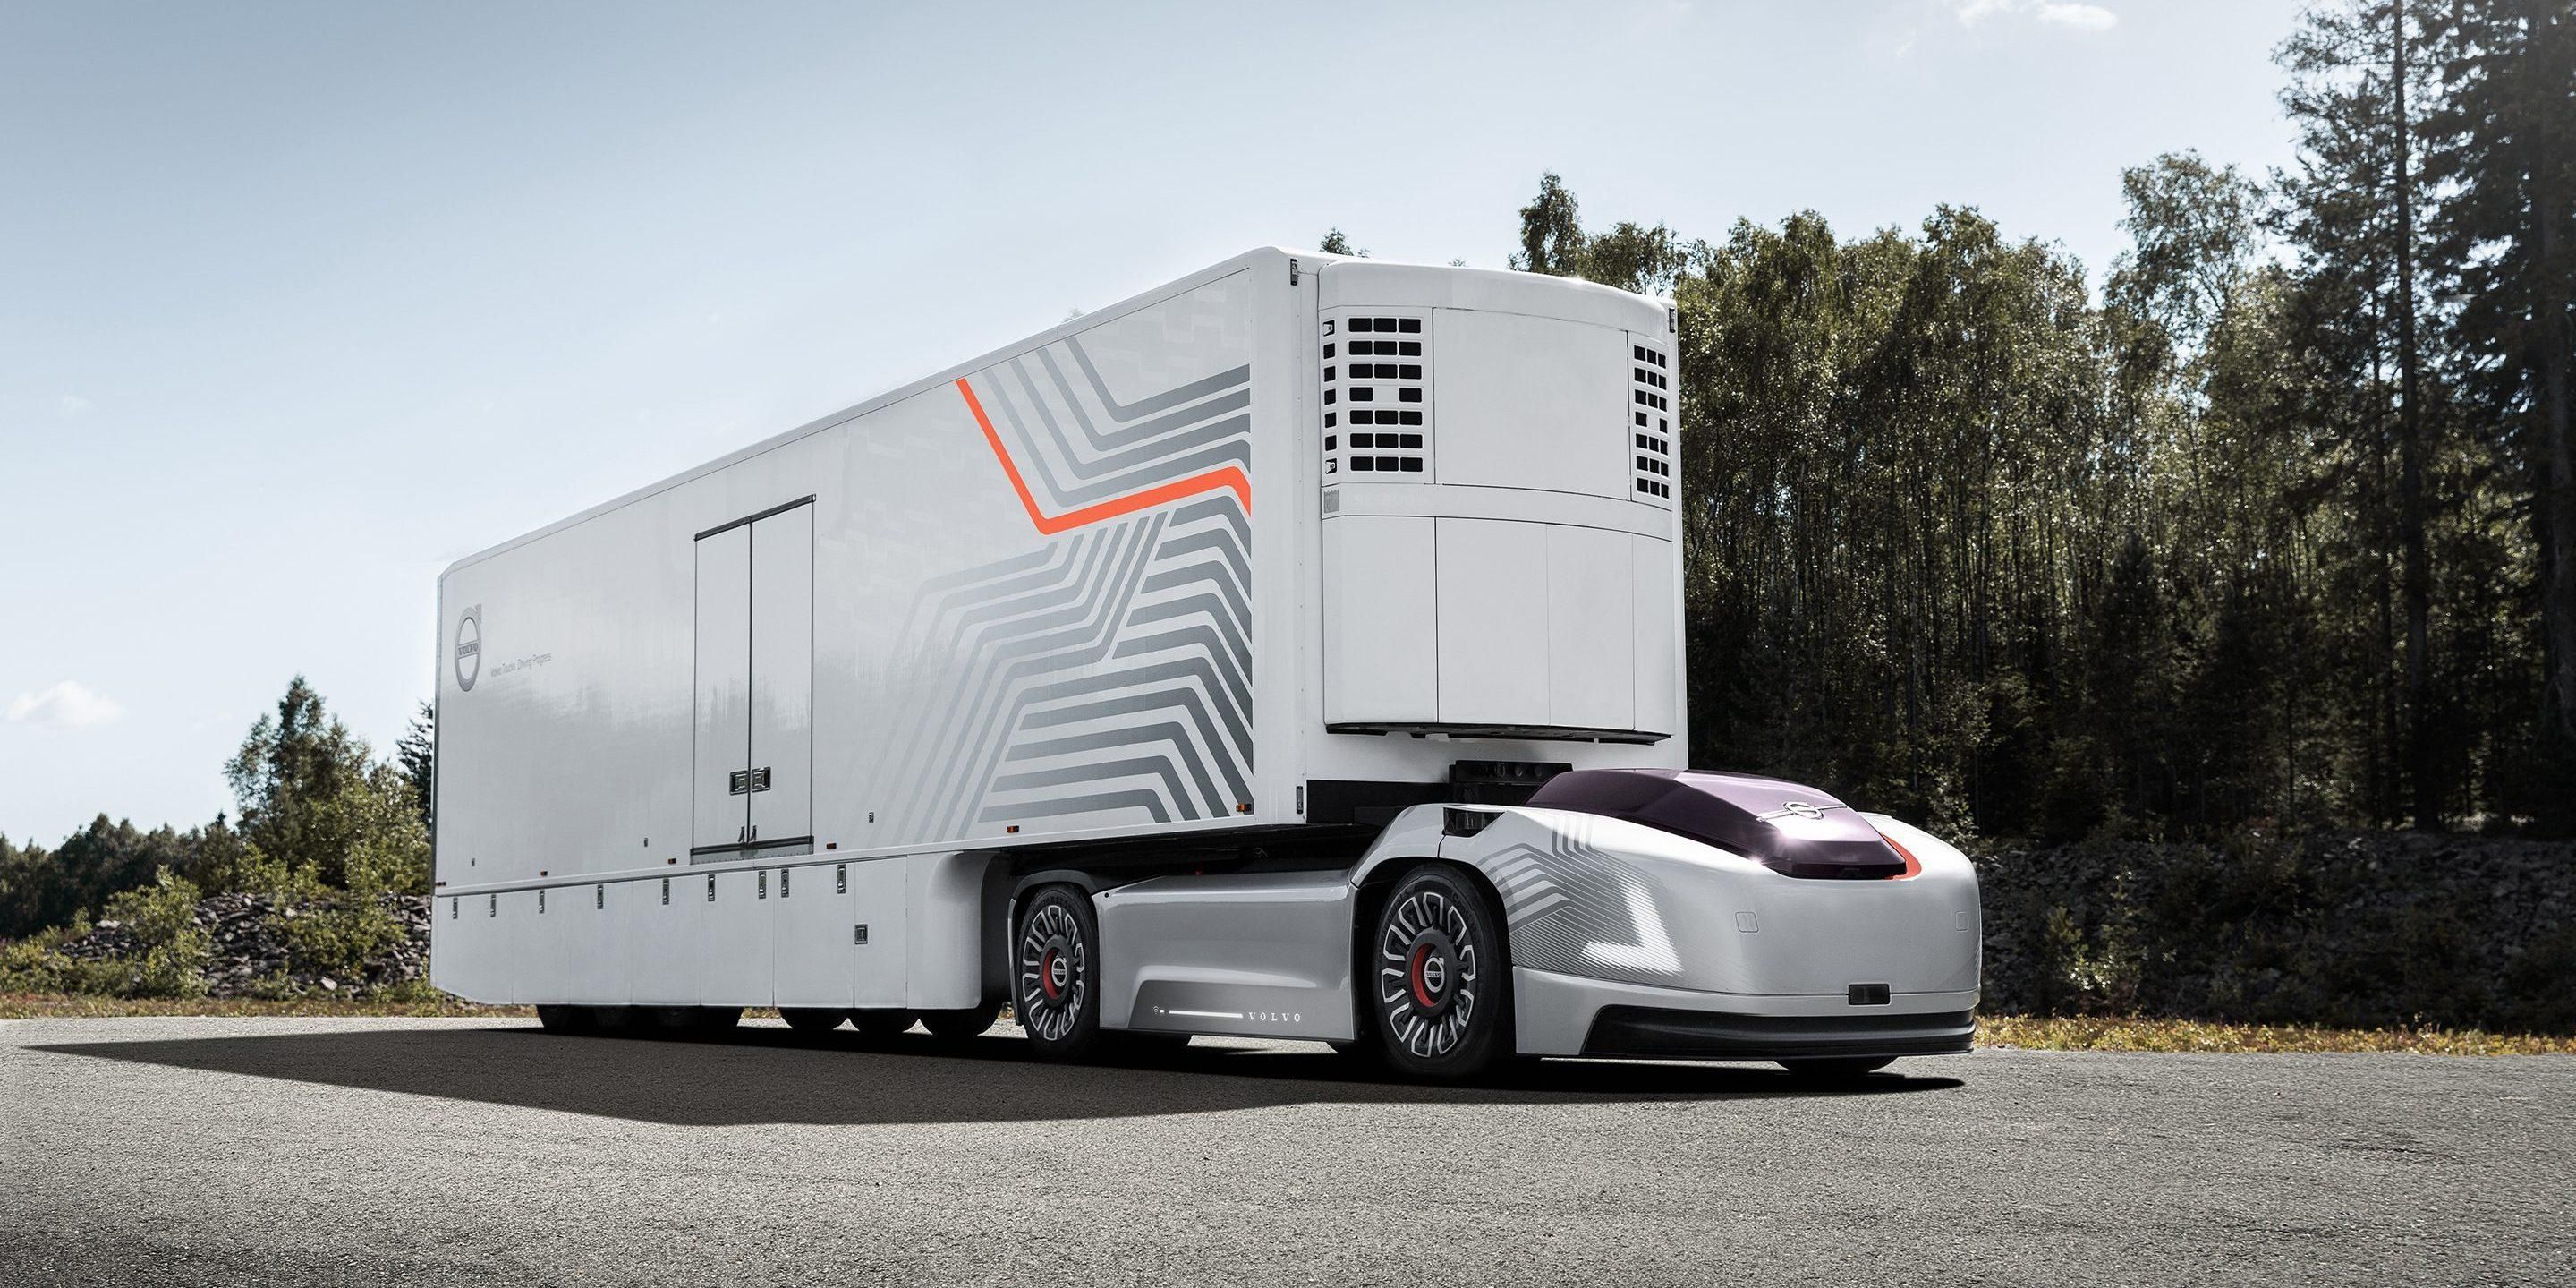 Вантажні перевезення майбутнього: робомобілі Vera без кабіни від Volvo Trucks